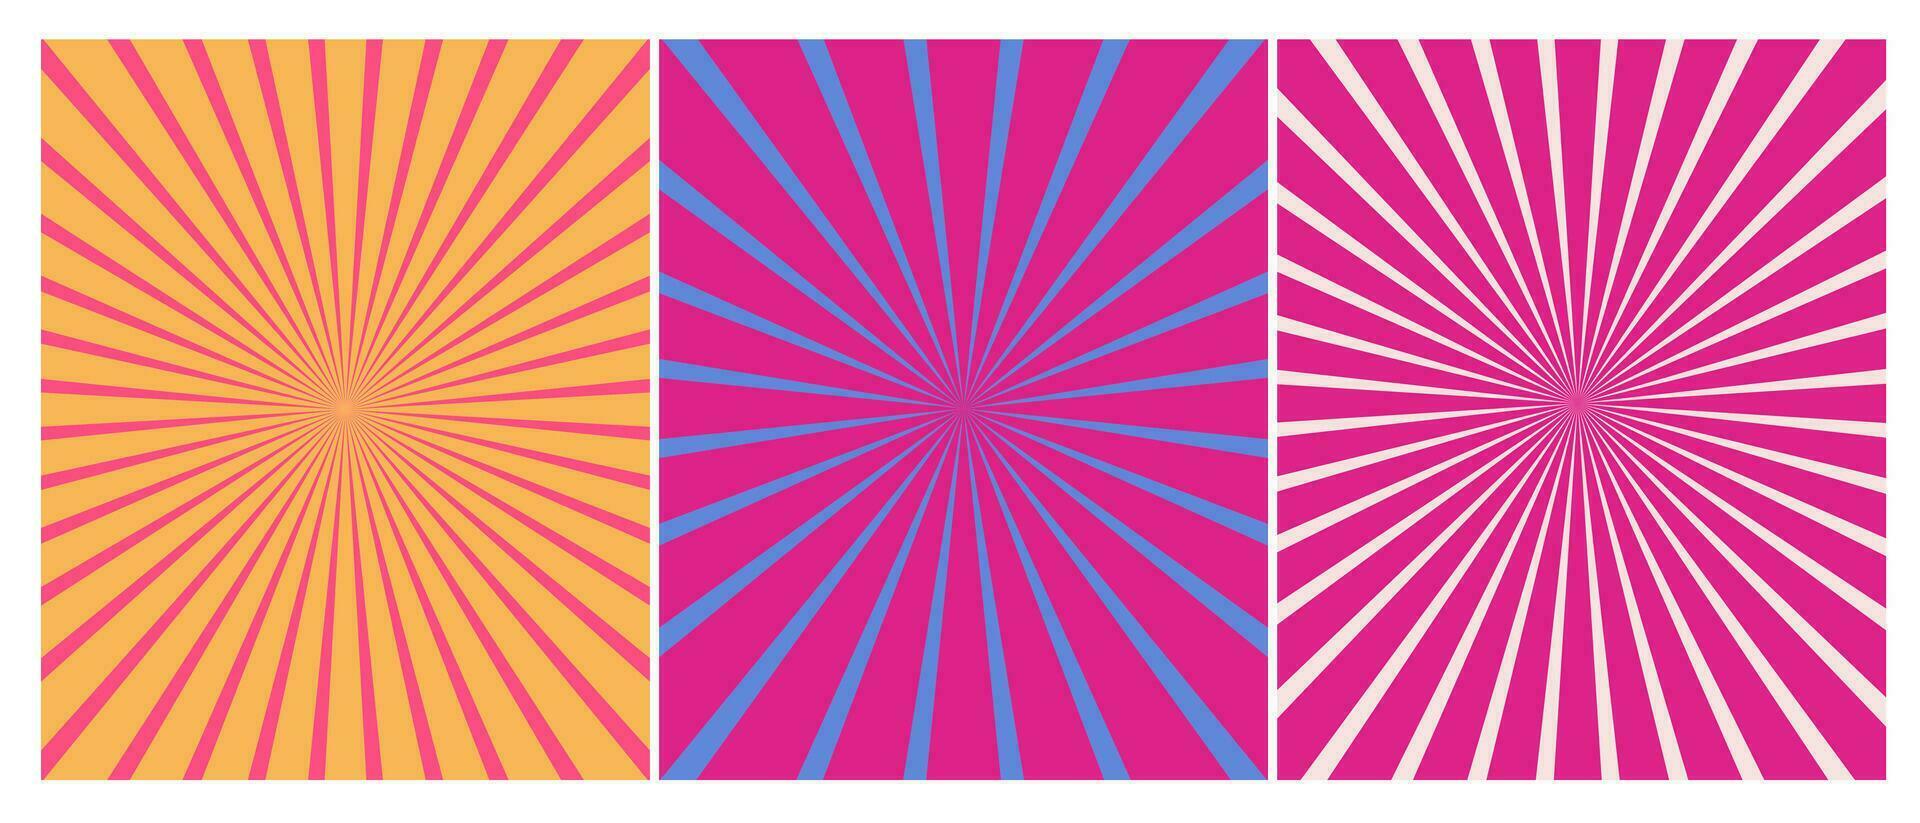 uppsättning av sunburst bakgrund i retro trendig rosa och blå färger, 60s 70s 80s abstrakt affisch vektor